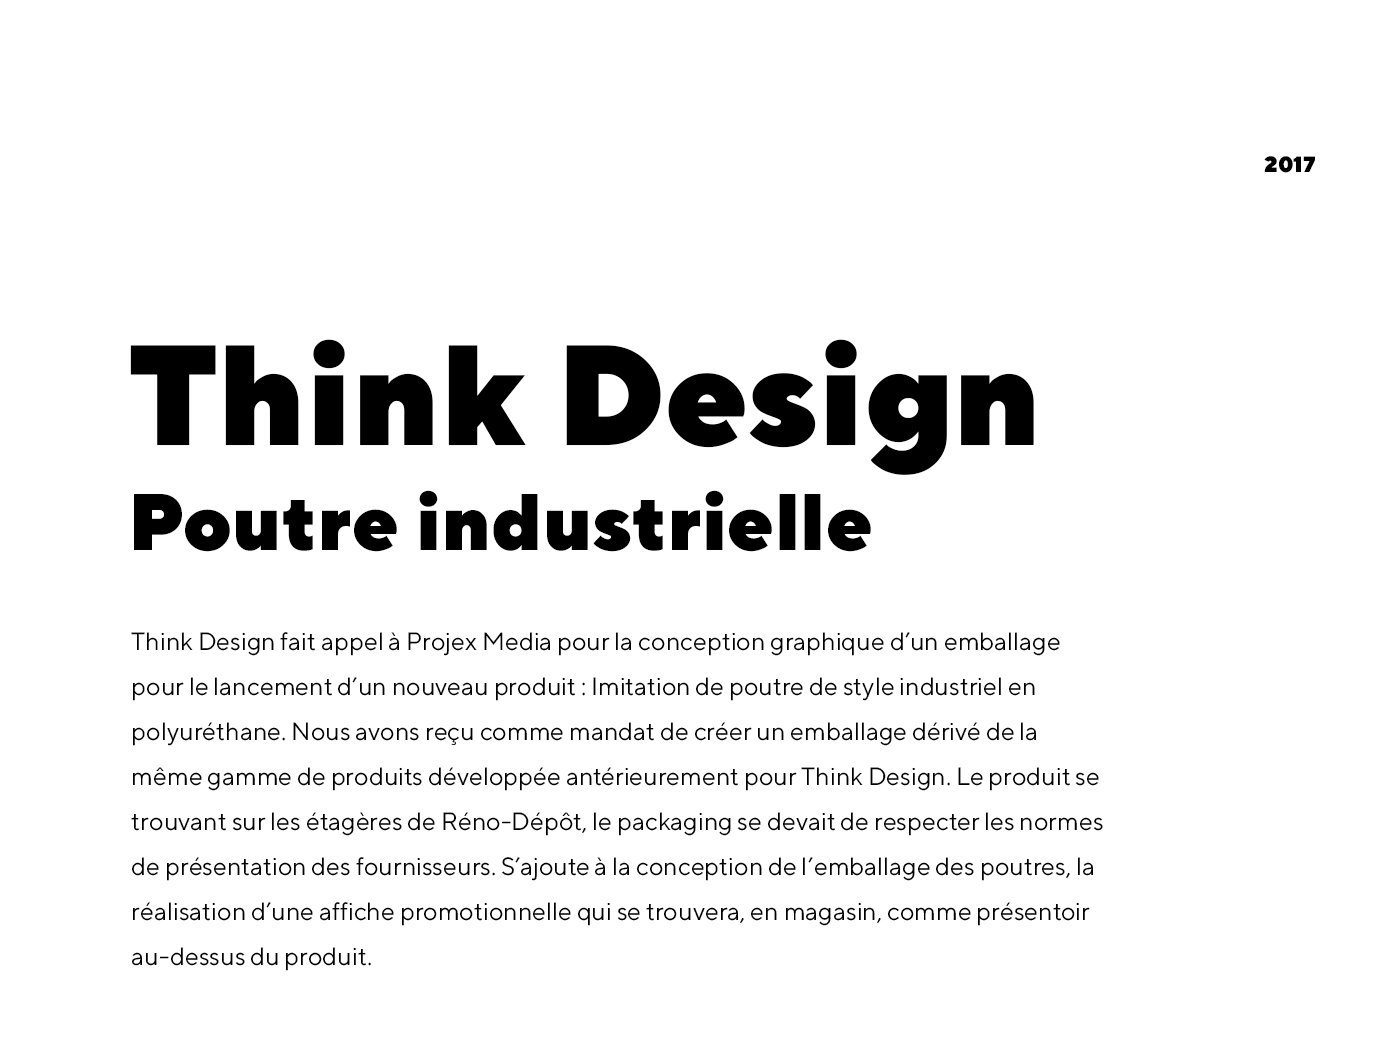 Conception d'un emballage de produit et affiche publicitaire pour Think Design - Imitation de poutre de style industriel en polyuréthane, produit en vente au Réno-Dépôt / 2018 - Réalisation signée Projex Media